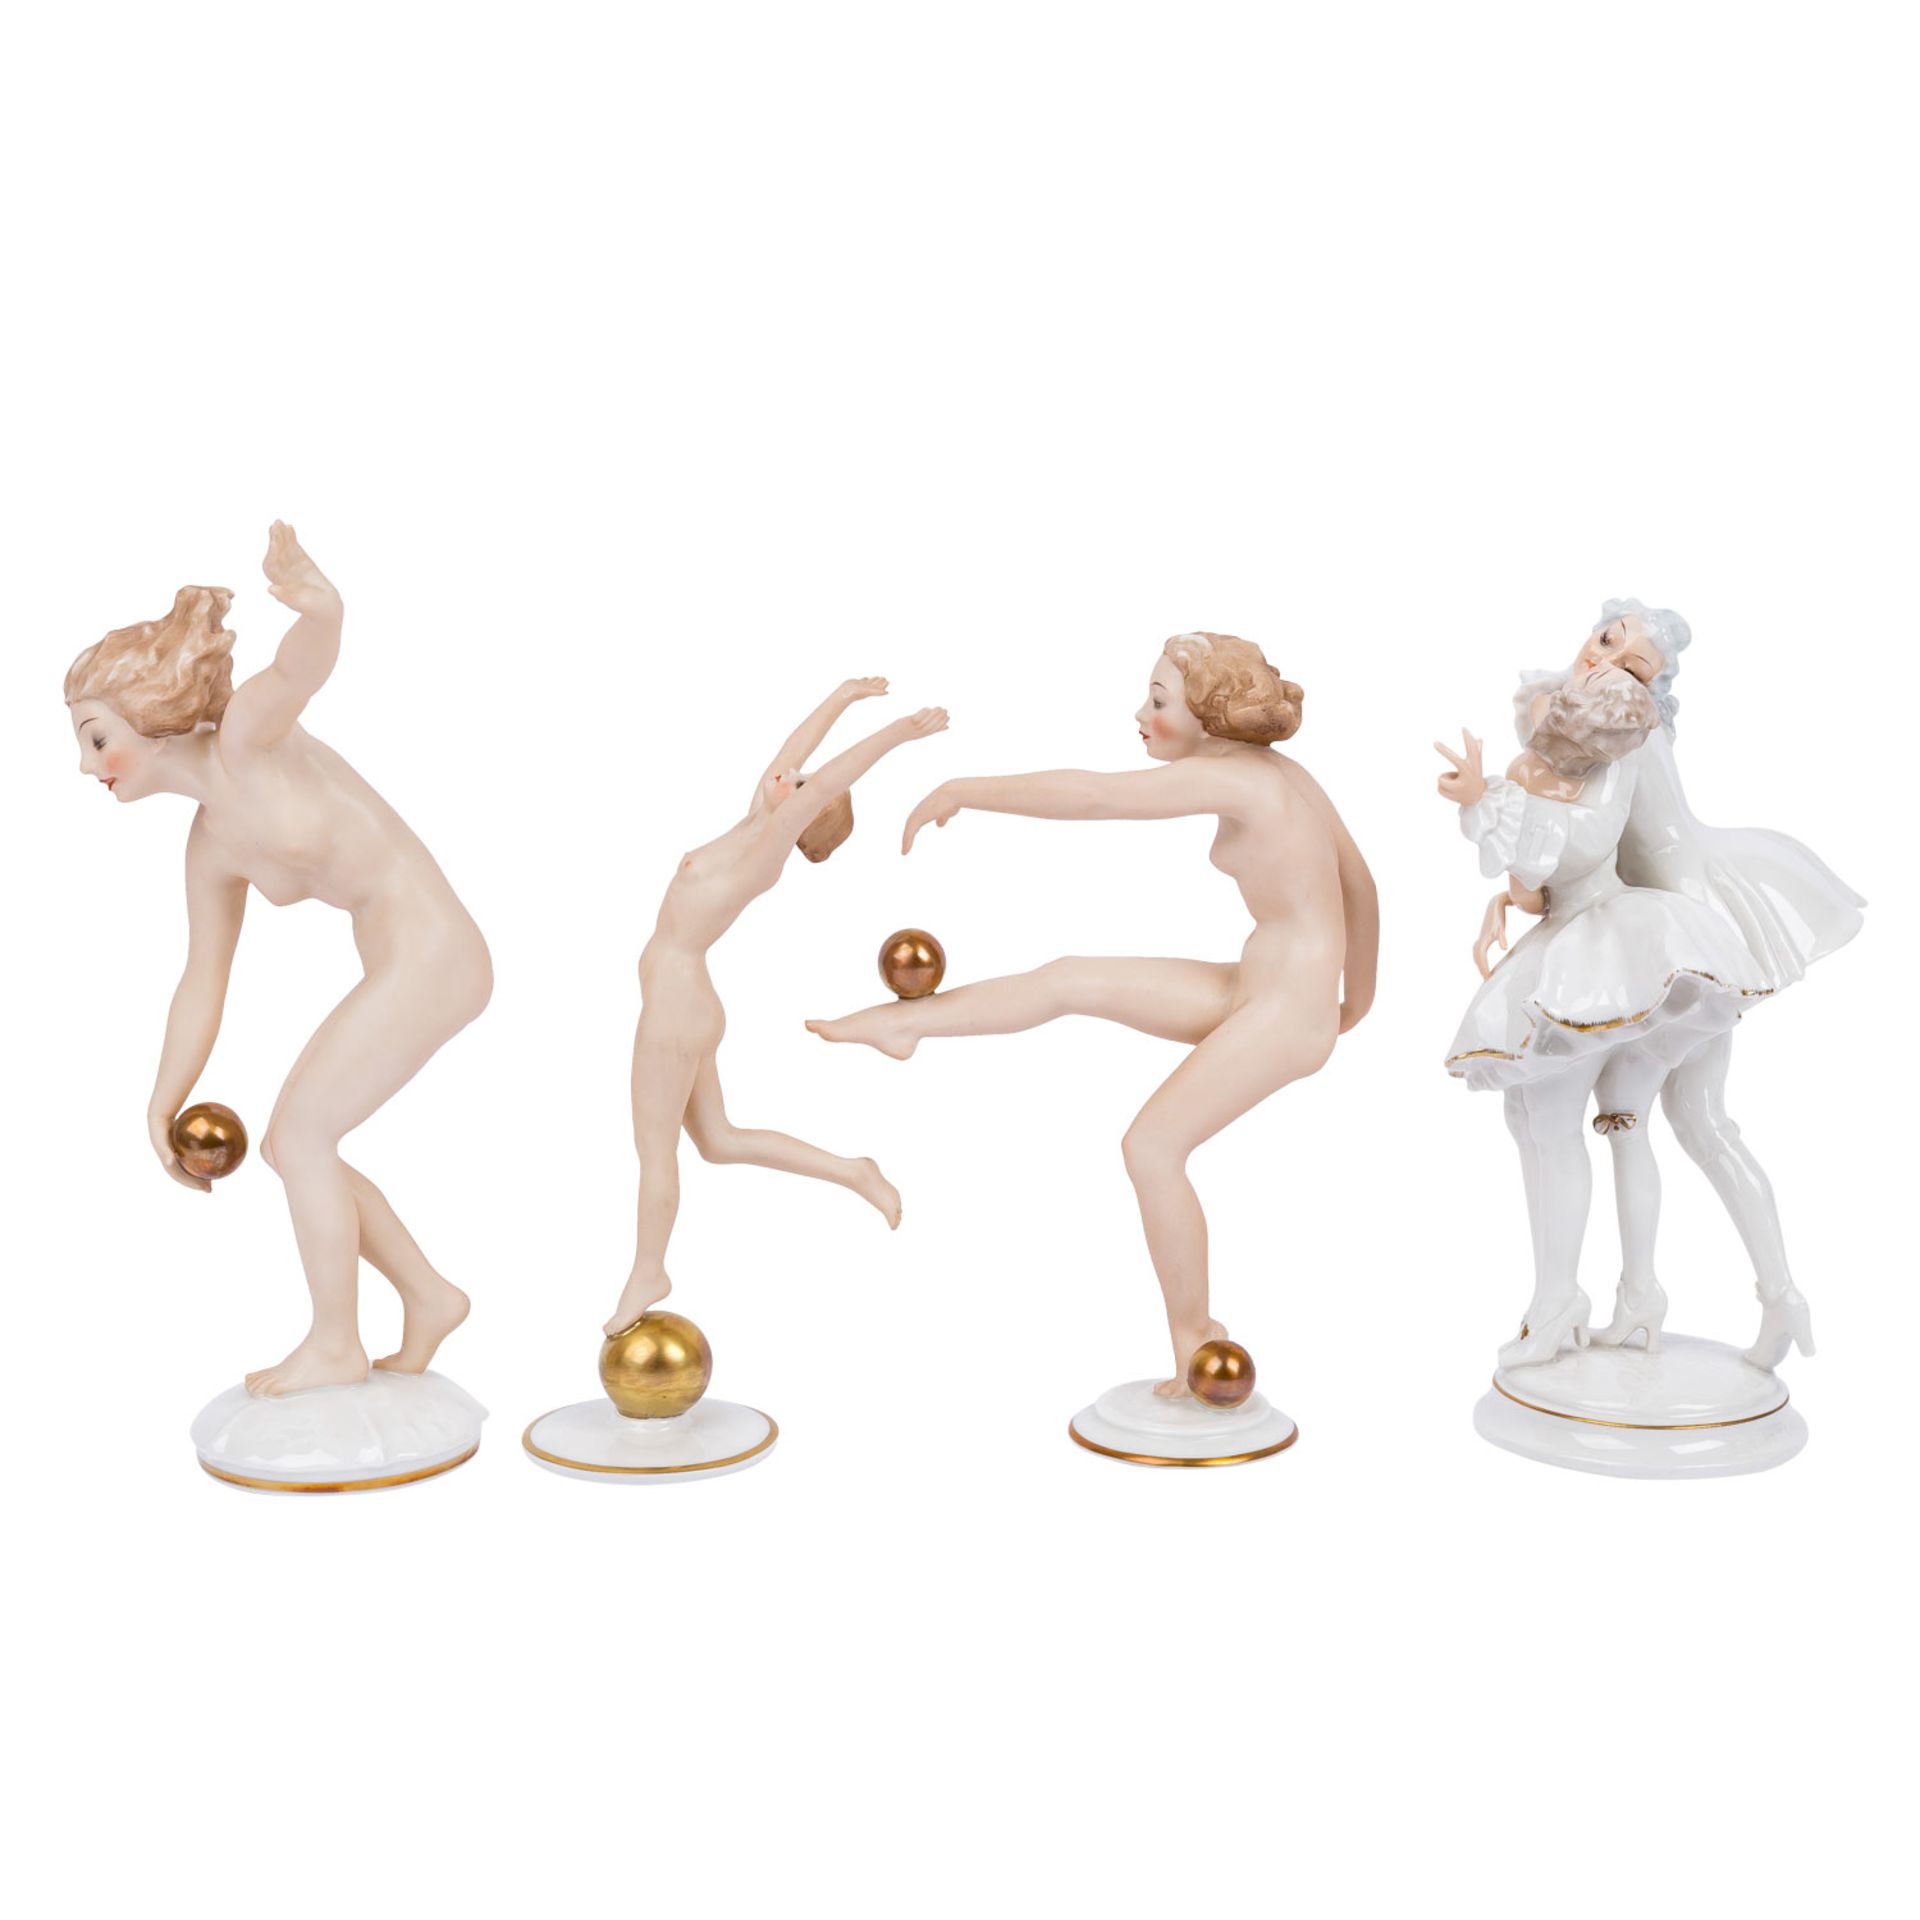 HUTSCHENREUTHER 3 Frauenfiguren mit Kugeln und 1 Tanzpaar, 1. und 2. Wahl, 20. Jh. - Image 3 of 11